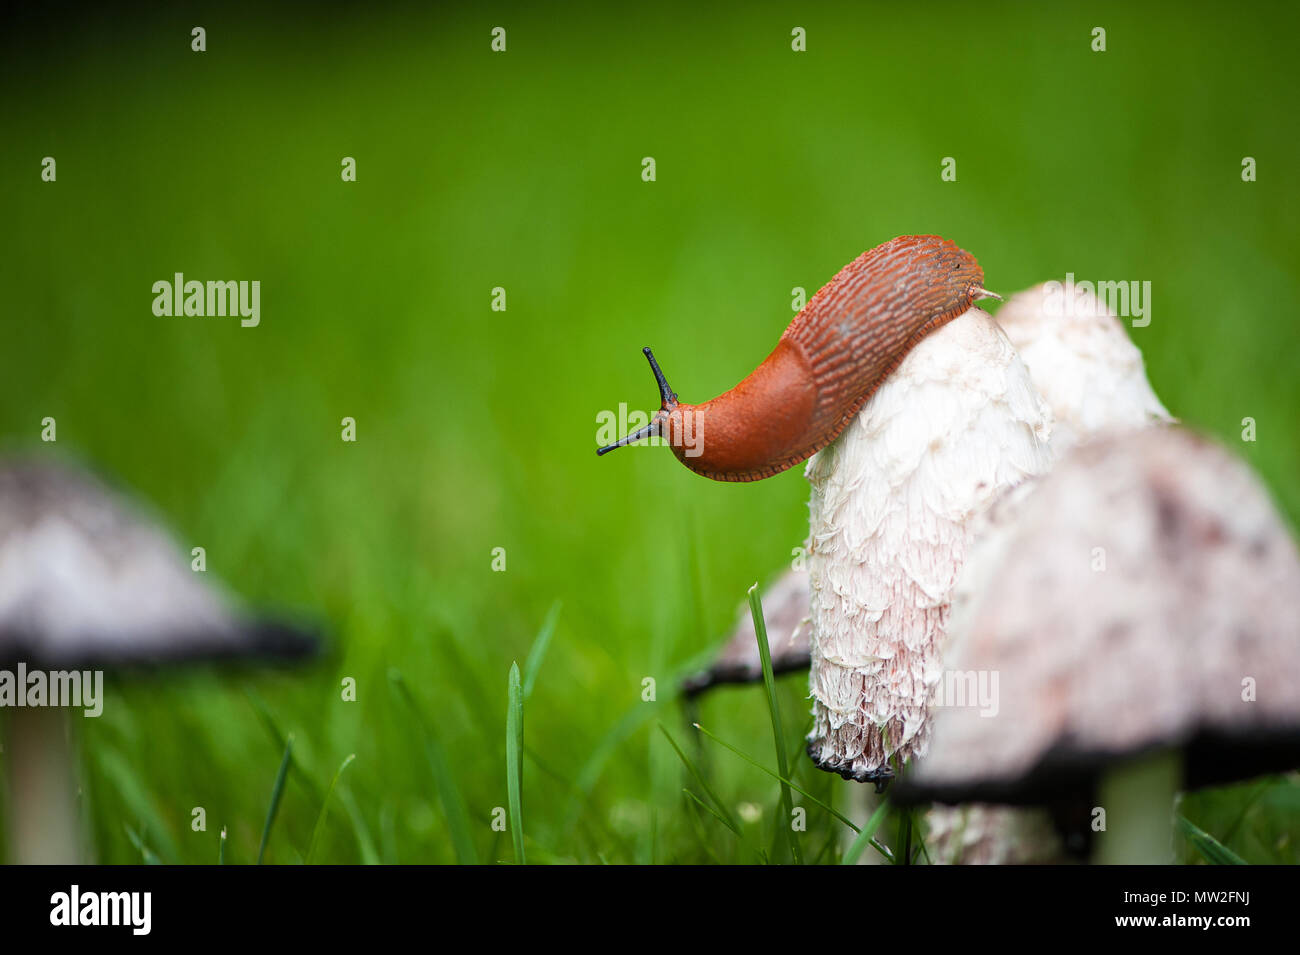 Nahaufnahme eines Europäischen roten Slug (Arion rufus) auf einem braunen Pilz nach einer Regendusche Stockfoto